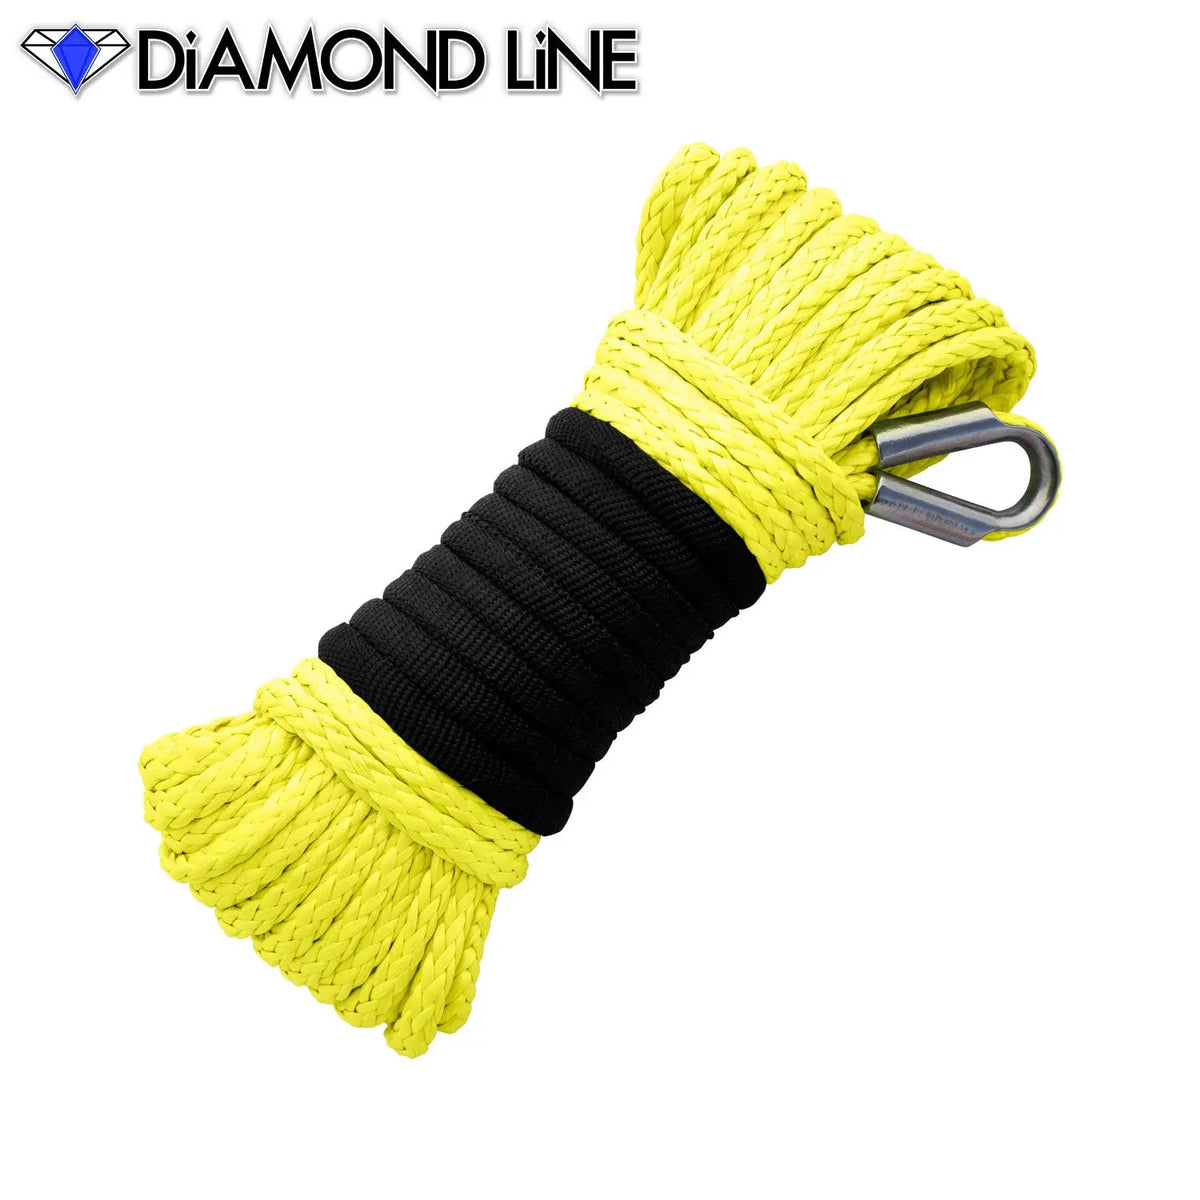 3/16" x 50' Diamond Line Winch Rope Mainline - Yellow.